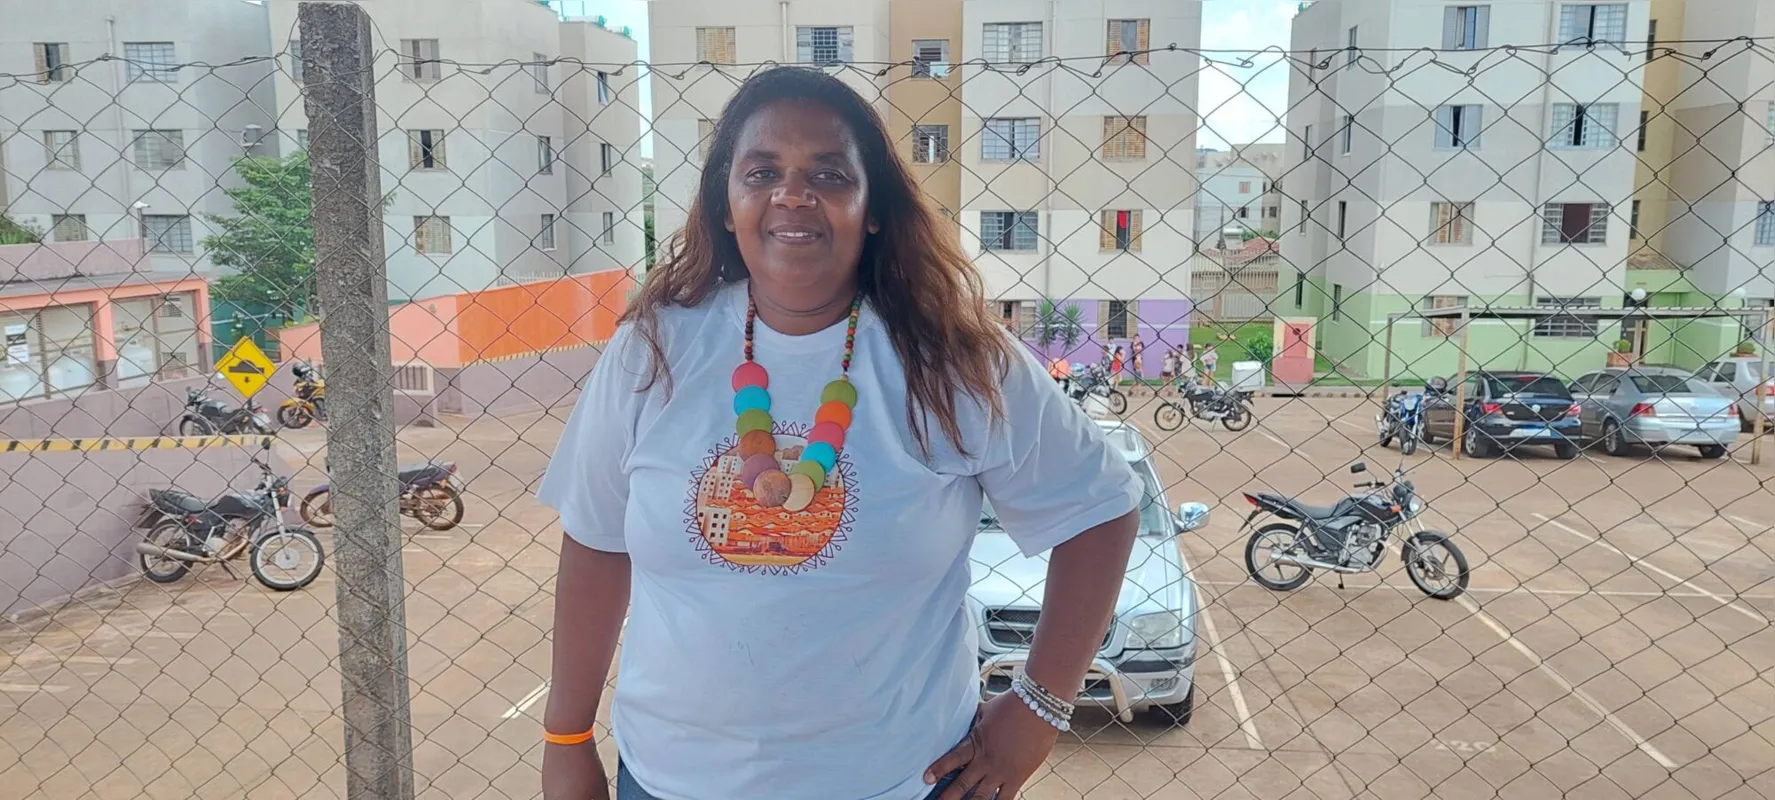 Vera Cristina Vieira, presidente da associação de moradores:  “Os materiais podem ser novos ou usados, desde que estejam em boas condições”